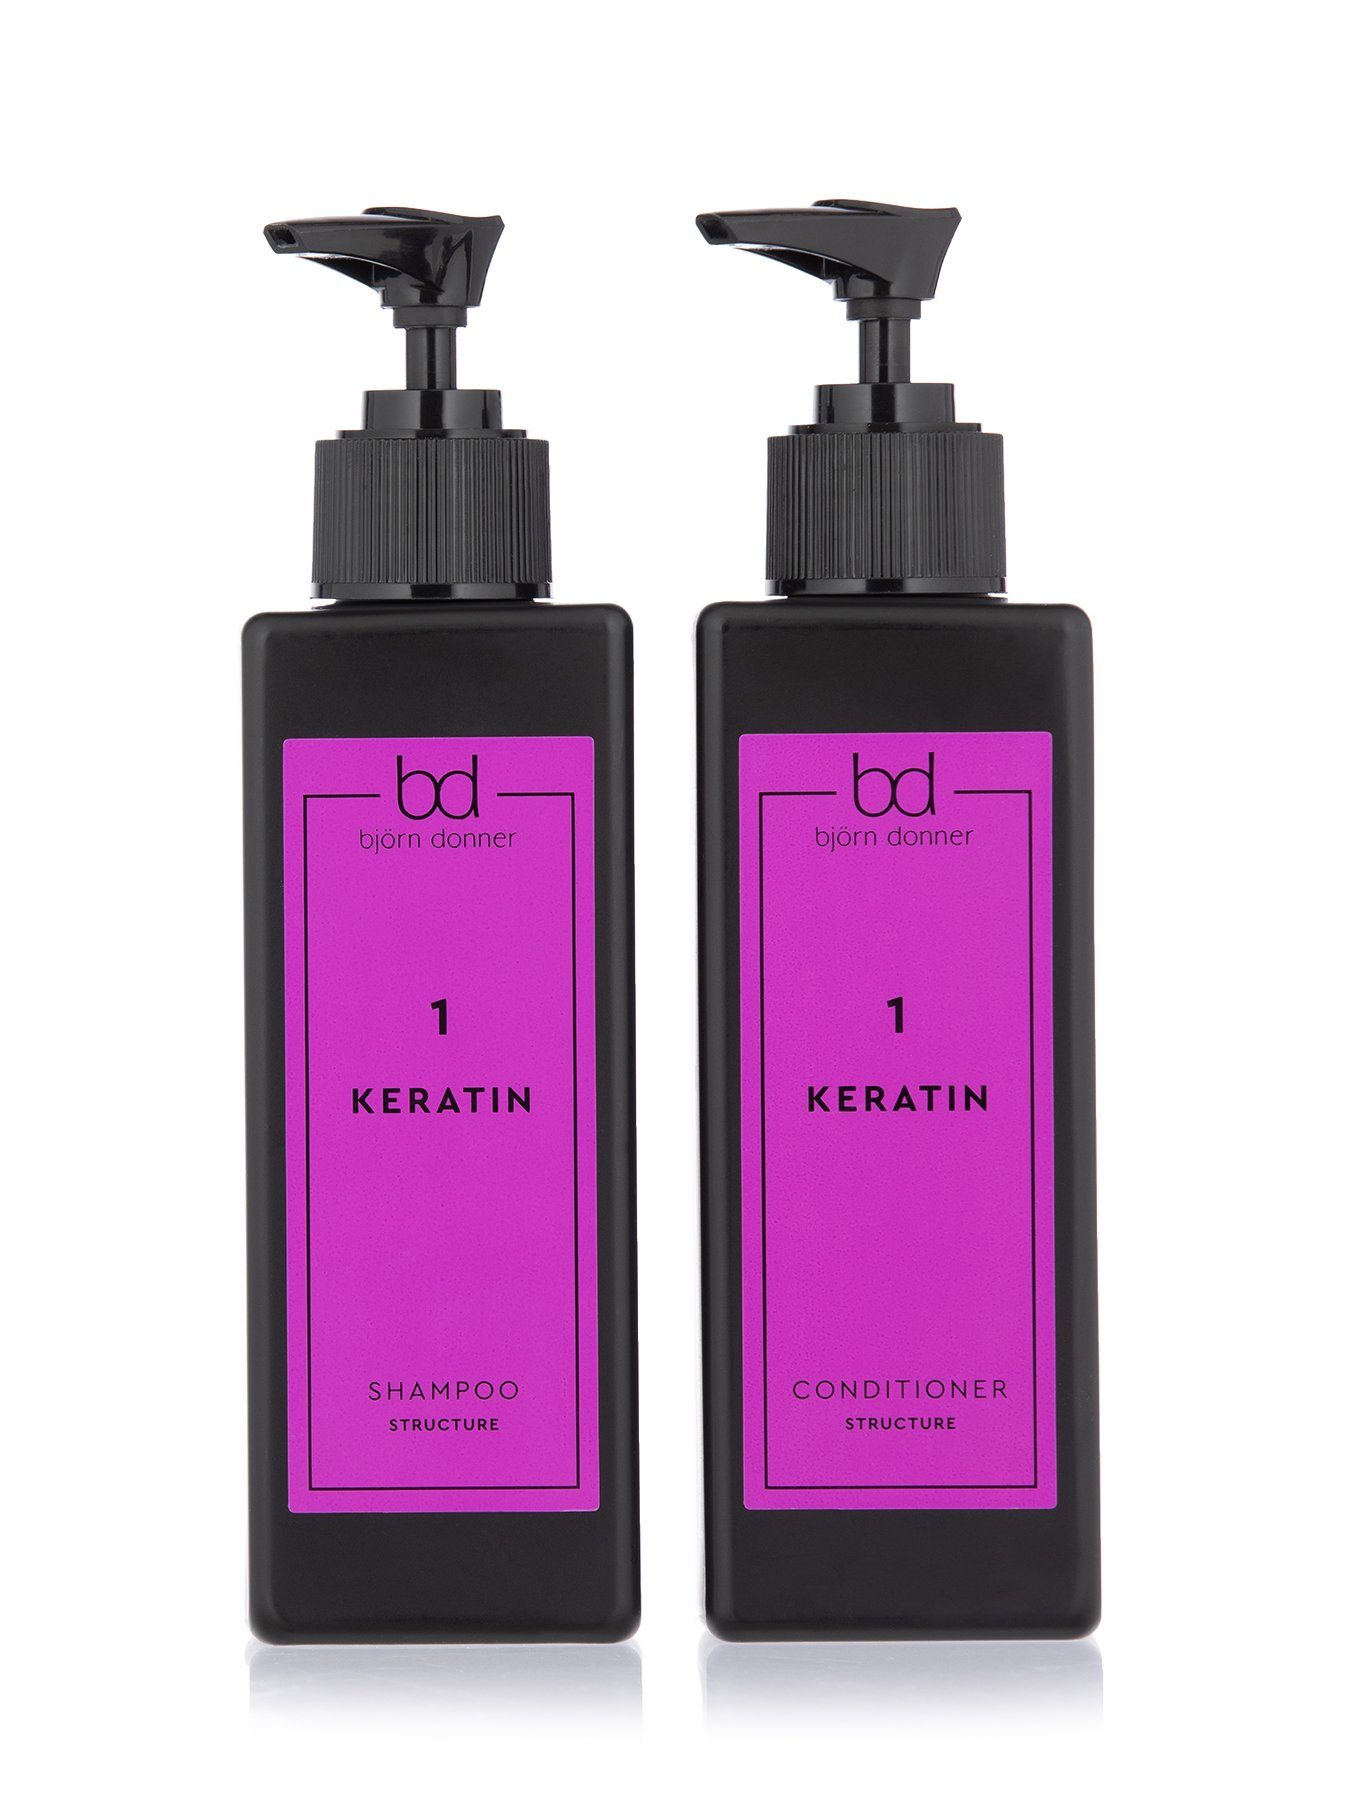 Björn Haarrestrukturierung "Strukture & mit zur Keratin, Set, Haarpflege-Set 2er Shampoo Donner Conditioner", hydrolisiertem